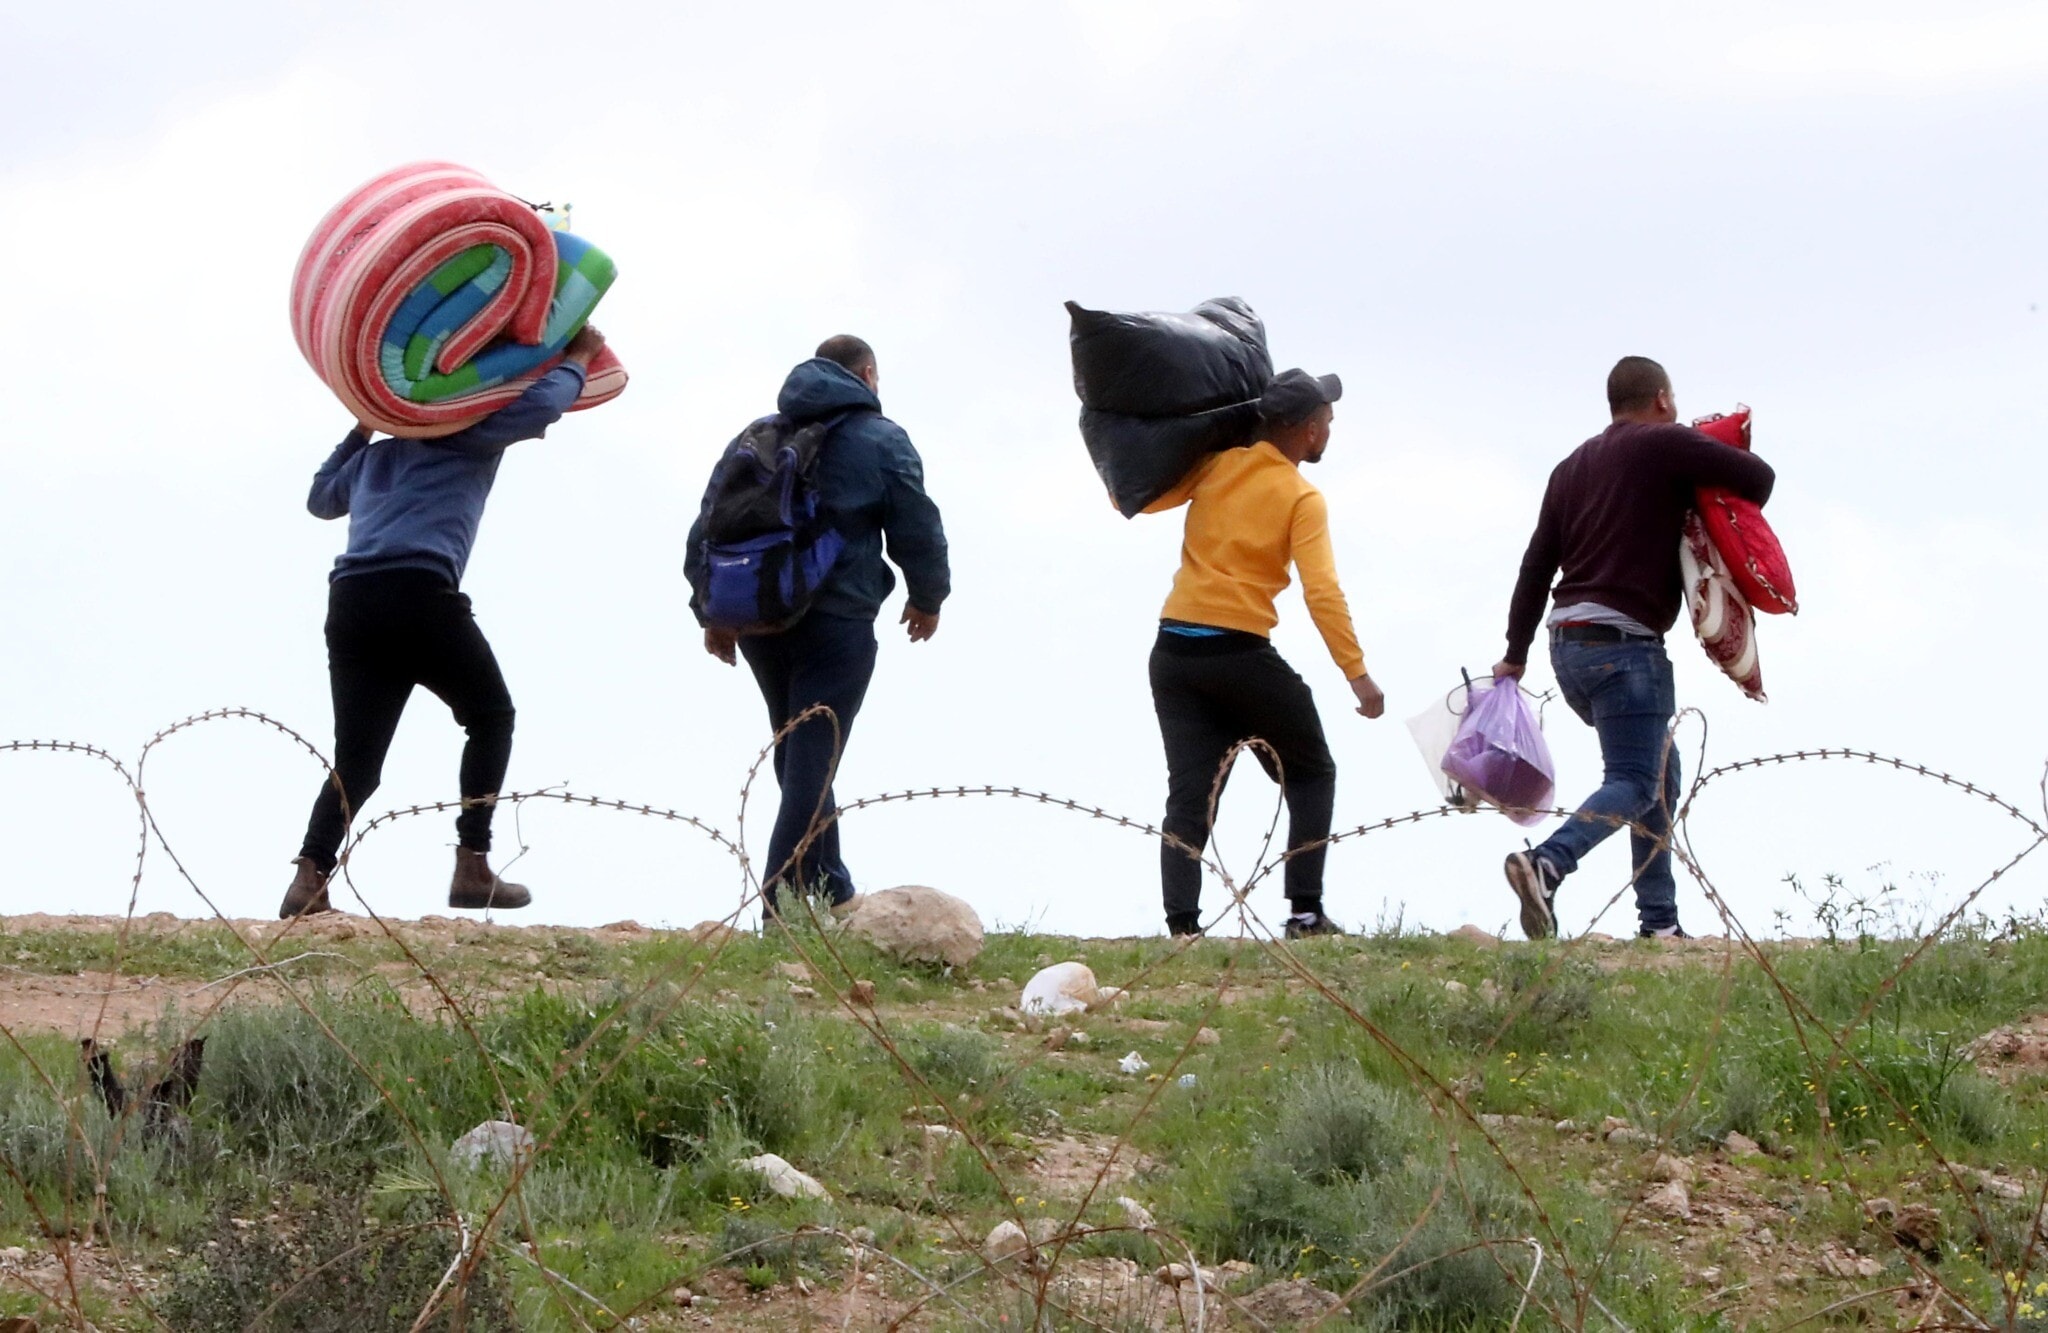 פועלים פלסטינים נכנסים לישראל דרך חור בגדר, לאחר שכניסתם נאסרה בגלל הקורונה, 22 במרץ 2020 (צילום: Wisam Hashlamoun/Flash90)